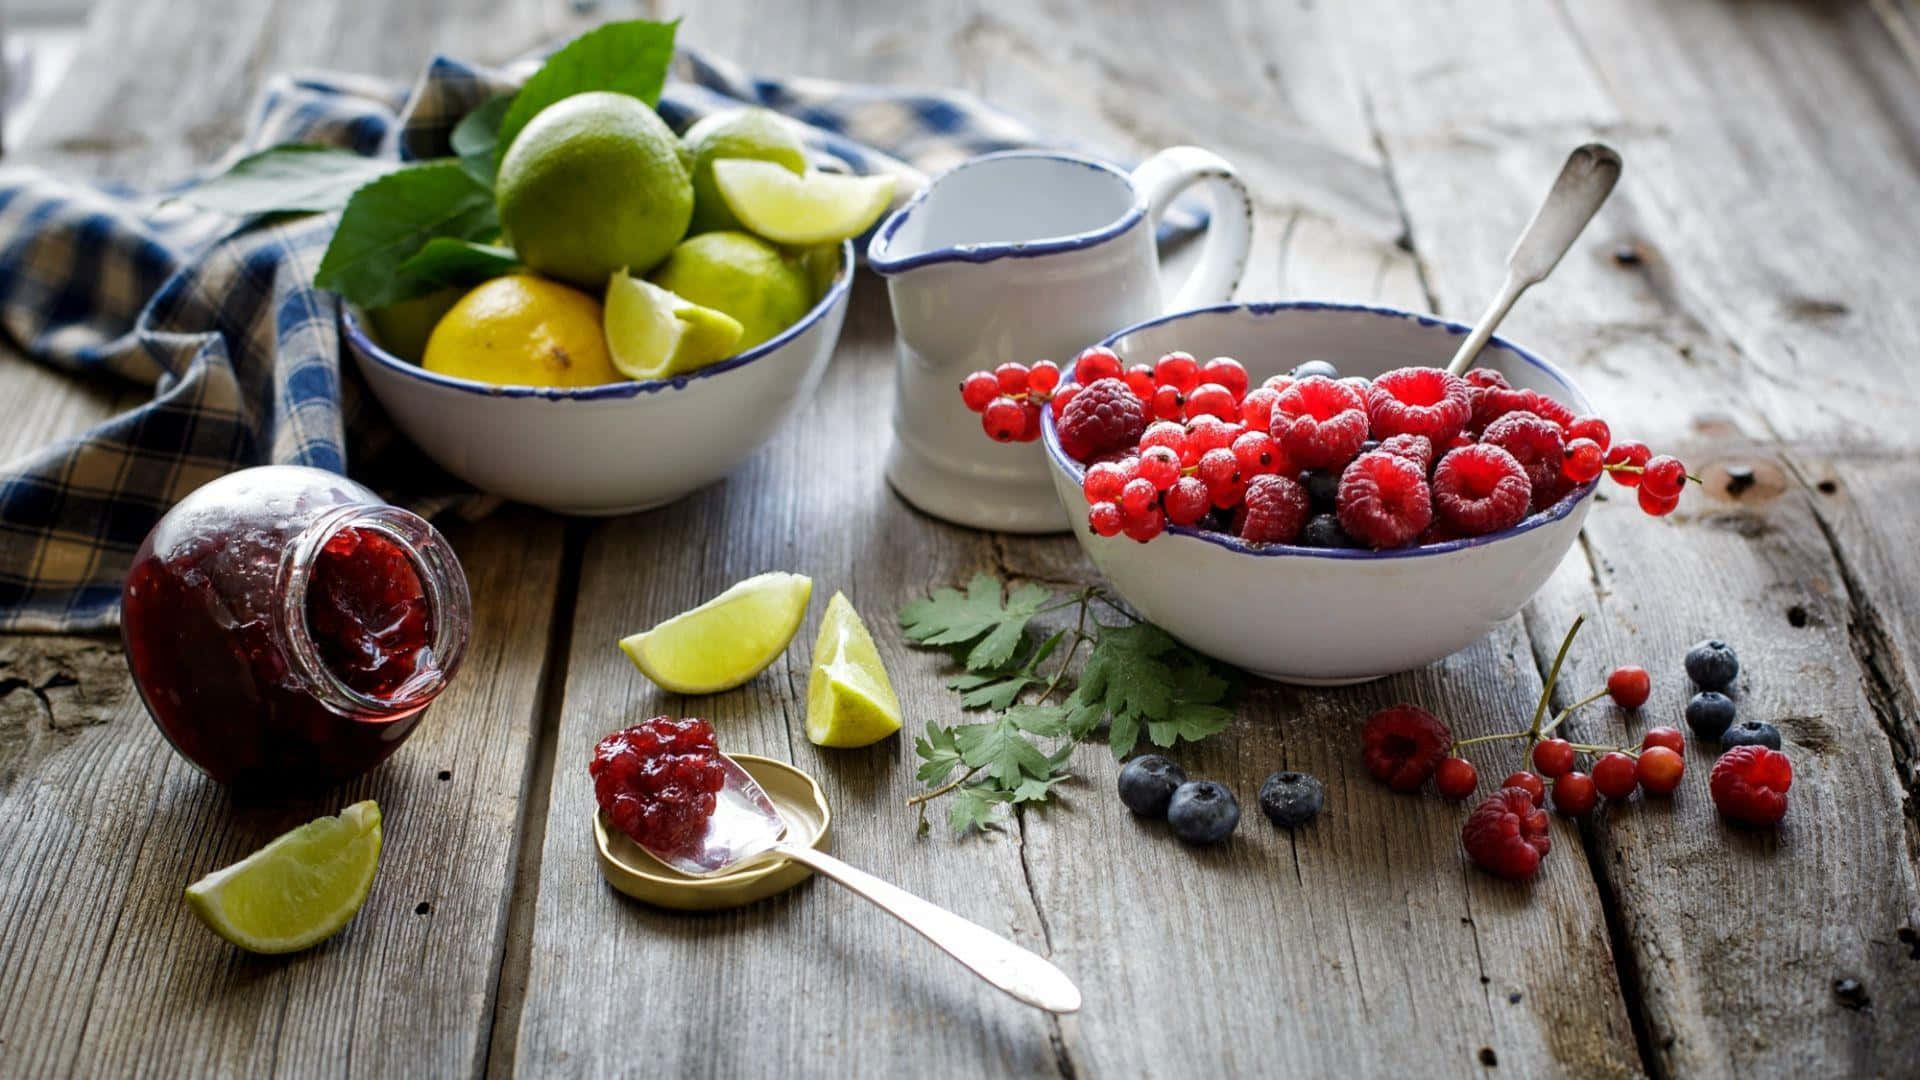 Imagende Alimentos Saludables: Frutas Y Mermelada